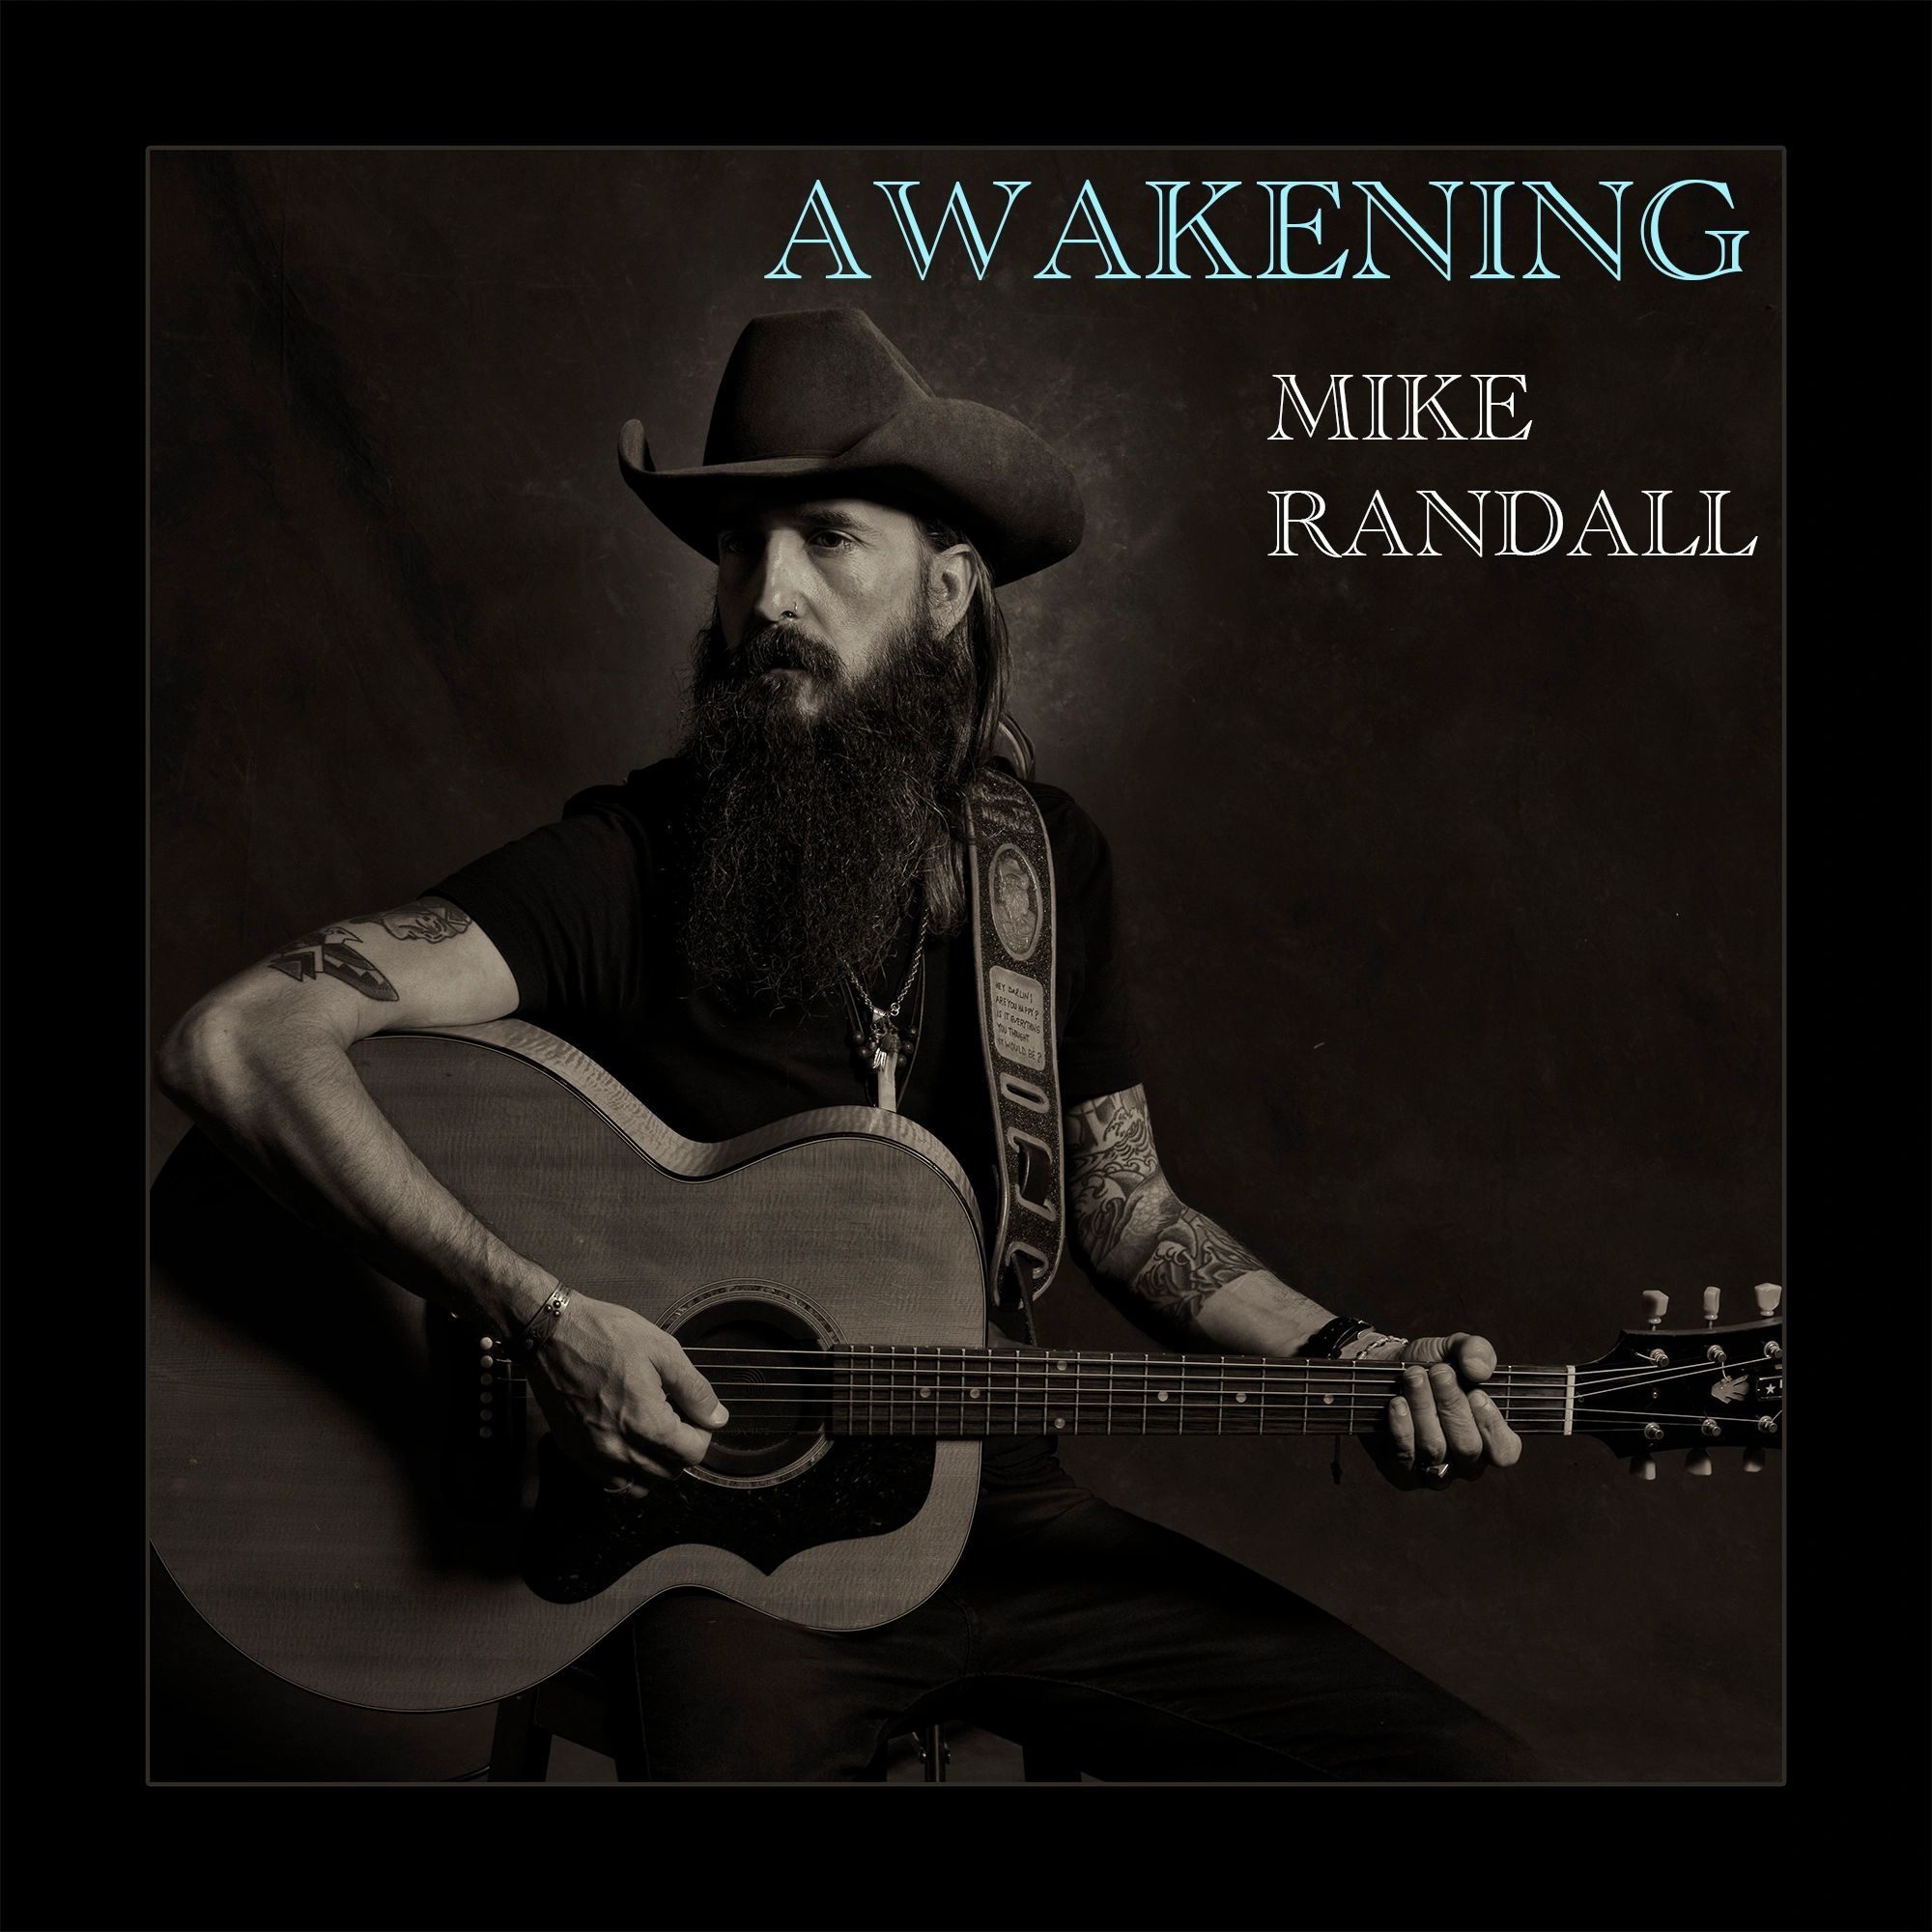 Album Cover for "Awakening" by Mike Randall.